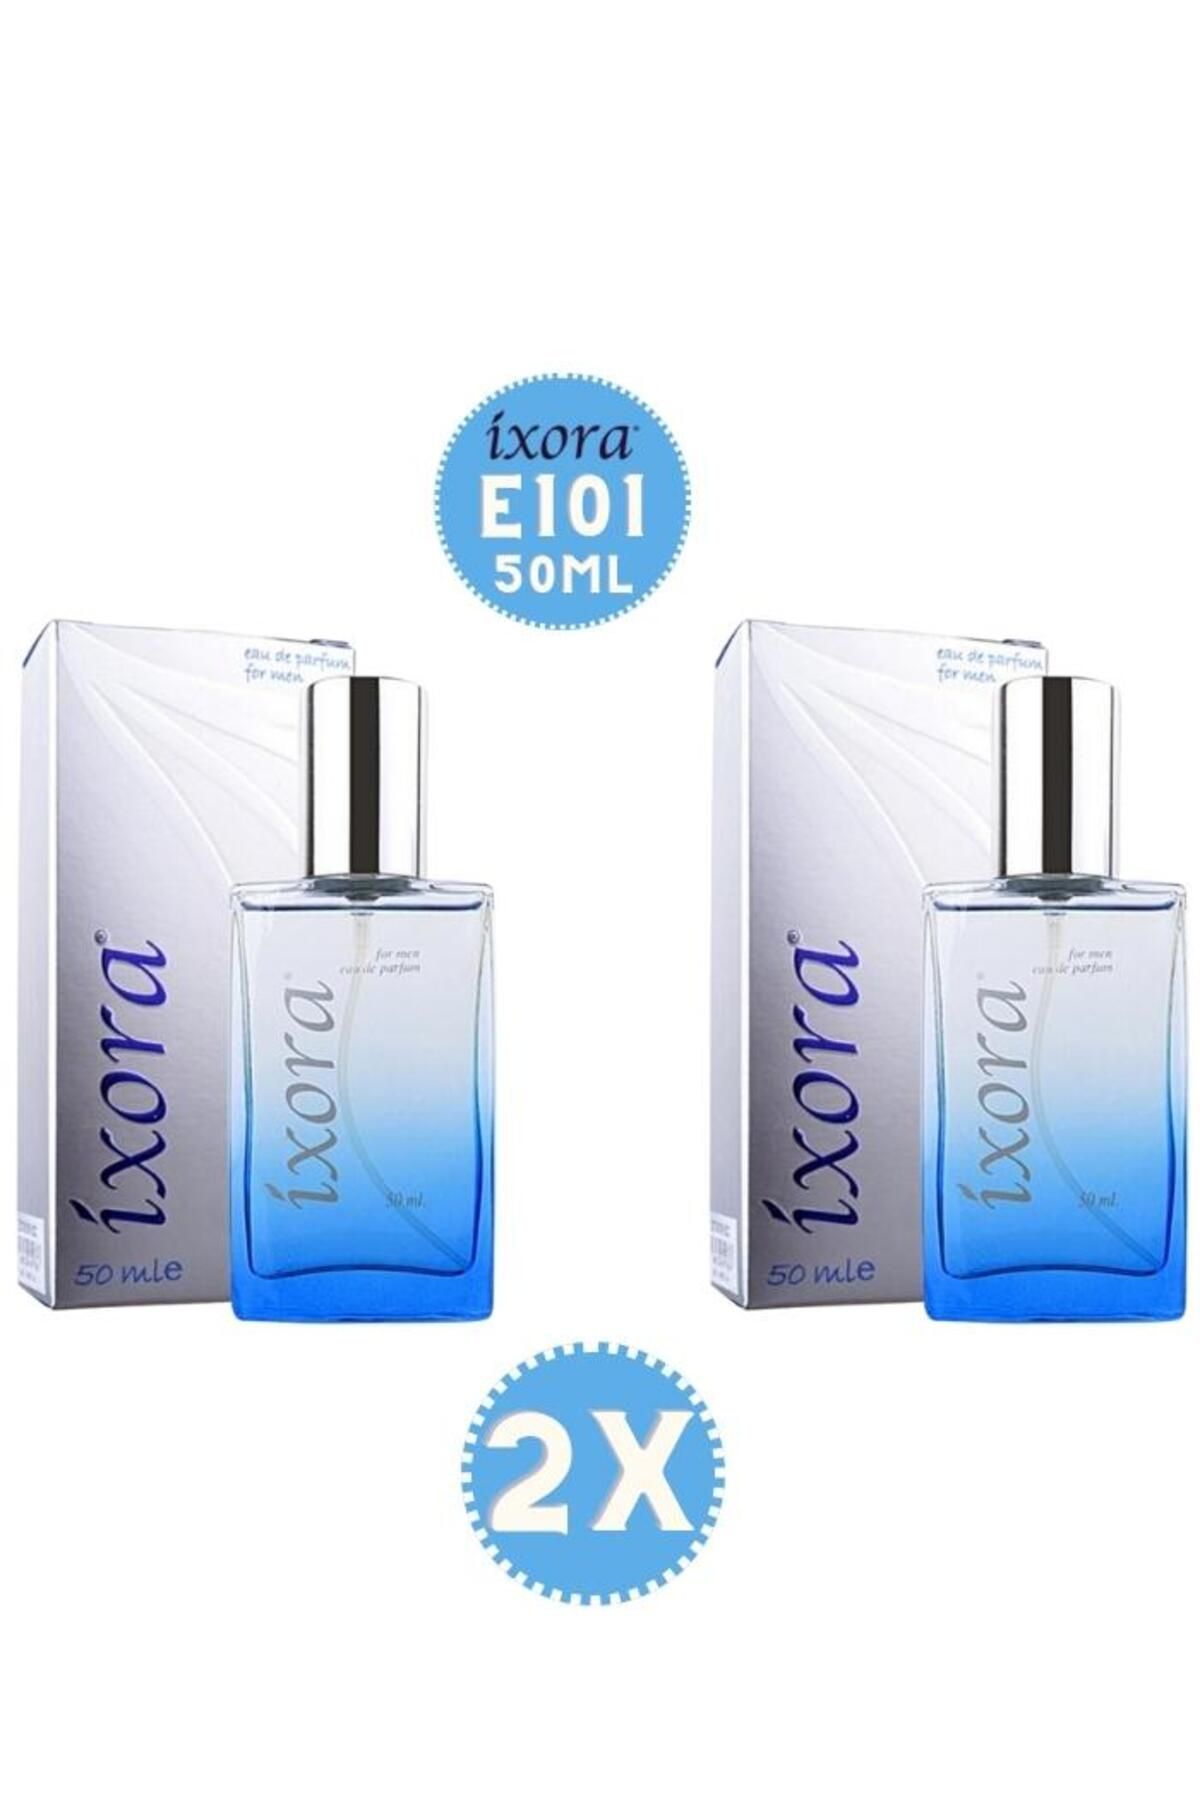 Ixora E101x2 (2 adet) King Erkek Parfüm 50 ml Edp